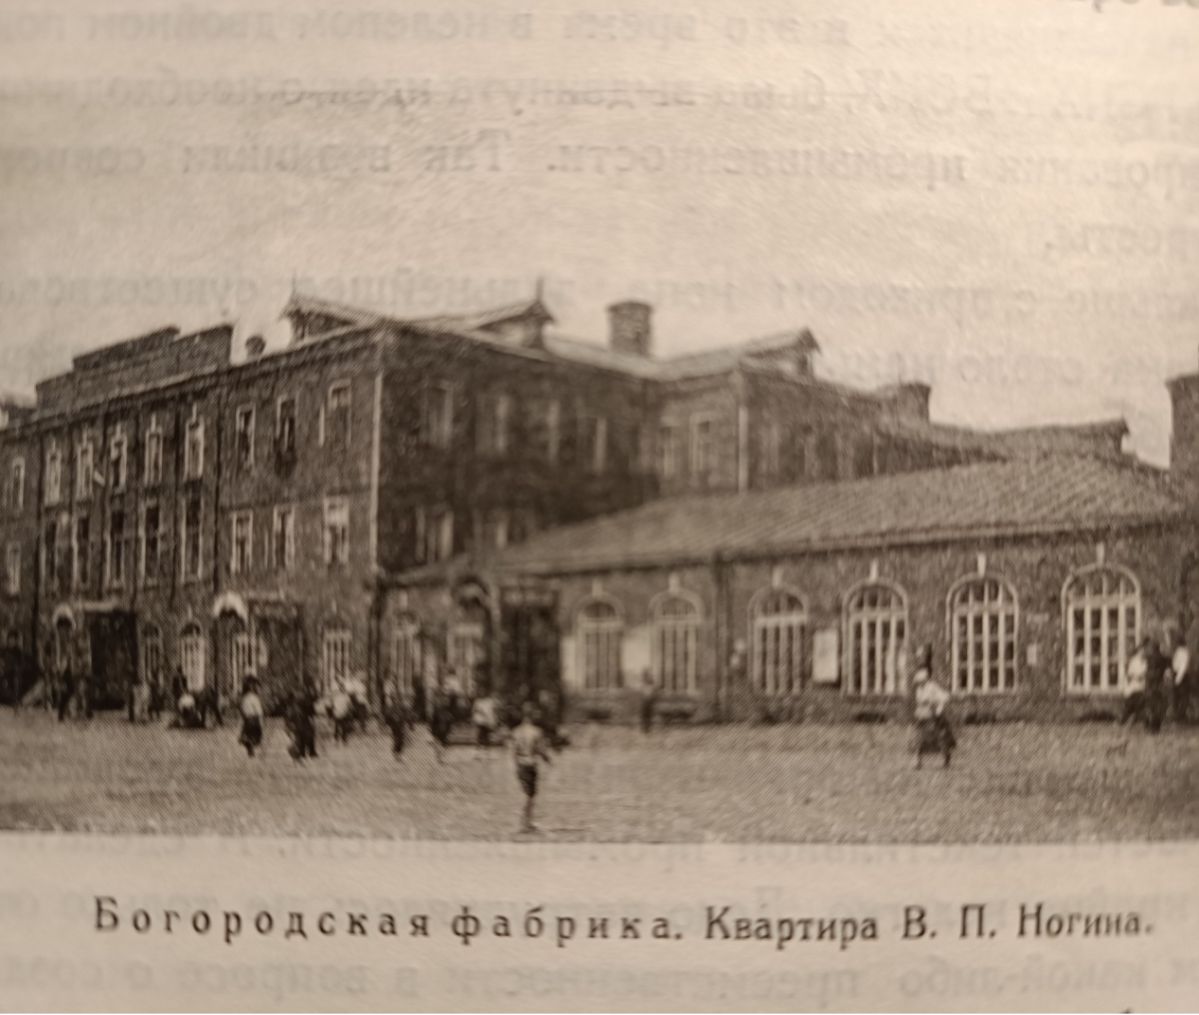 Богородская фабрика. Квартира В.П. Ногина